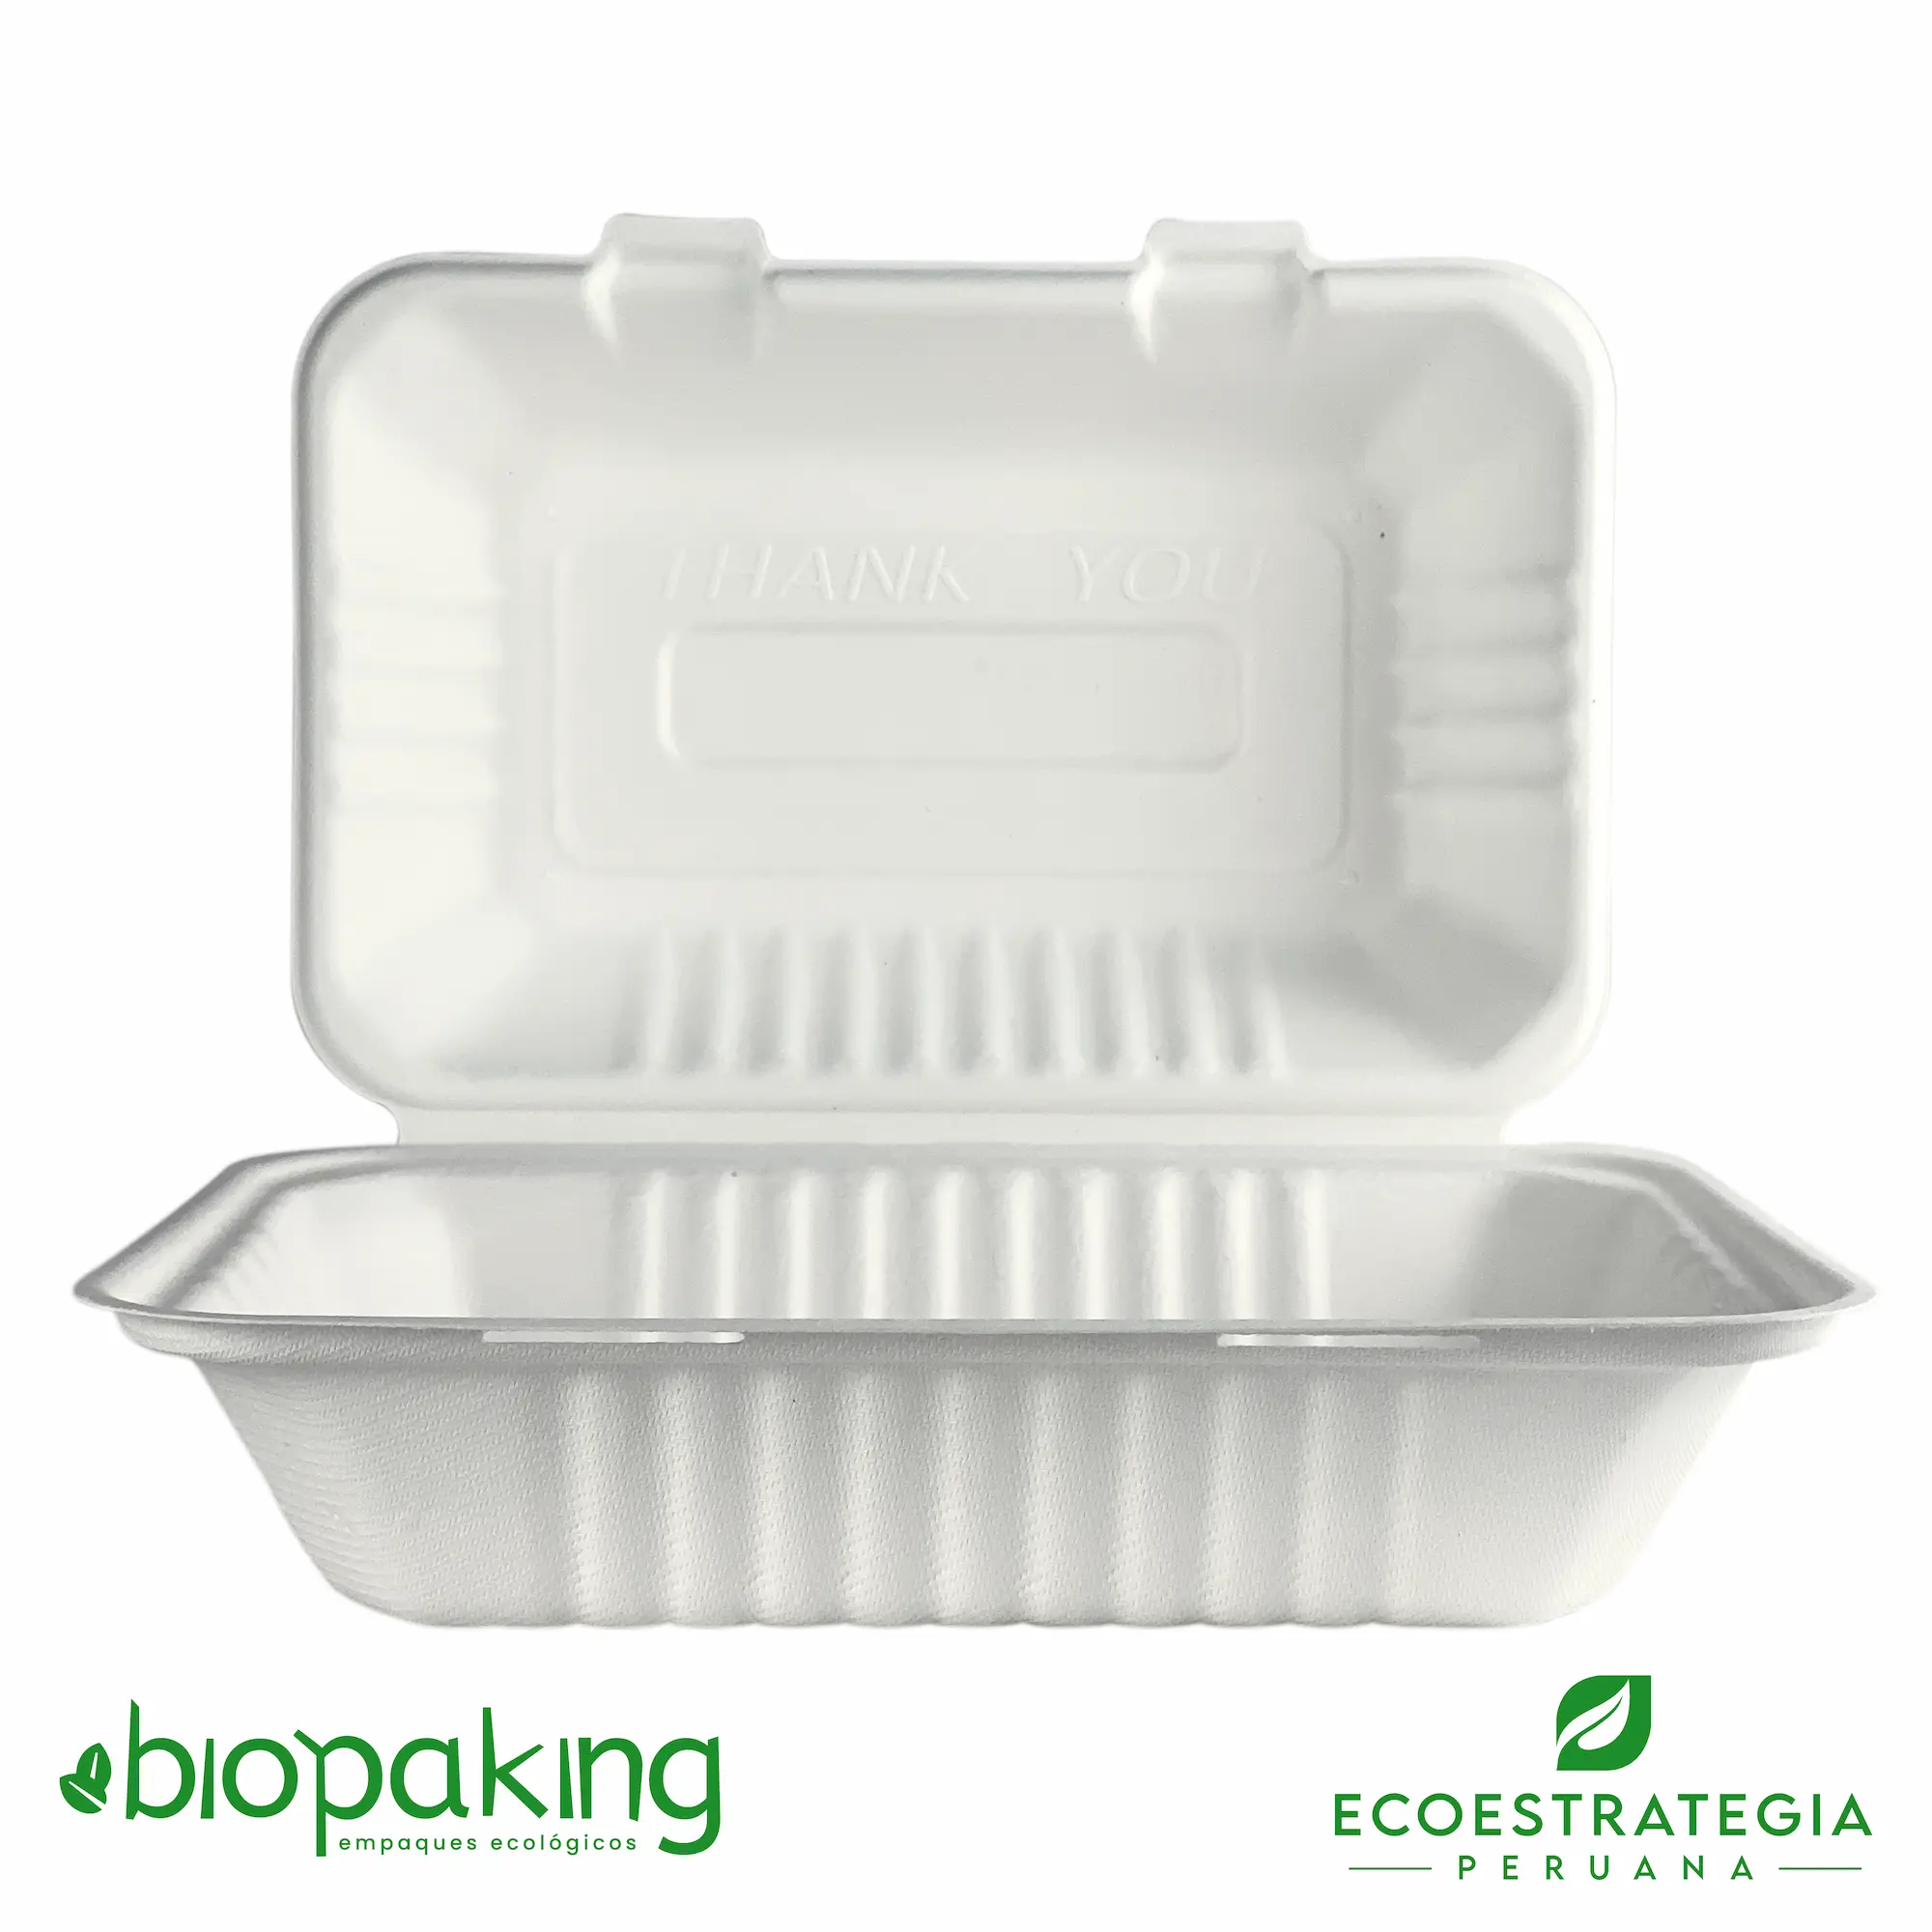 El envase biodegradable CT5 o EP-06, es conocido también como envases biodegradables ct5, envases ecológicos ct5, envases descartables ct5, envases ep06, Ct5 biodegradable, Contenedor ct5 21x16x8, Contenedor biodegradable 9 x 6 3”, Contenedor cuadrado 900ml, Contenedor bisagra 900ml, Clamshell biodegradable 900 ml, Bg-9x6, Contenedor 5 bioform fibra-ks bagazo de caña, Envase ct5, BCS96, Fbox6x9, 0111125, BCS06, TP002 CT5, Envase 9x6 pulgadas pulpa de caña de azúcar, Contenedor Eco 900 ml Ct5, Contenedor Eco 900 fibra de caña, Contenedor ct5, Envase ct5, Contenedor 5 fibra, ct5 9x6, ct5 biodegradable Perú, Box mediano, Envase biodegradable para Menú, Envase genérico biodegradable, v5, envase biodegradable 23 x15, importadores de envases biodegradable ct5, distribuidores ct5 biodegradable, mayoristas ct5 biodegradable